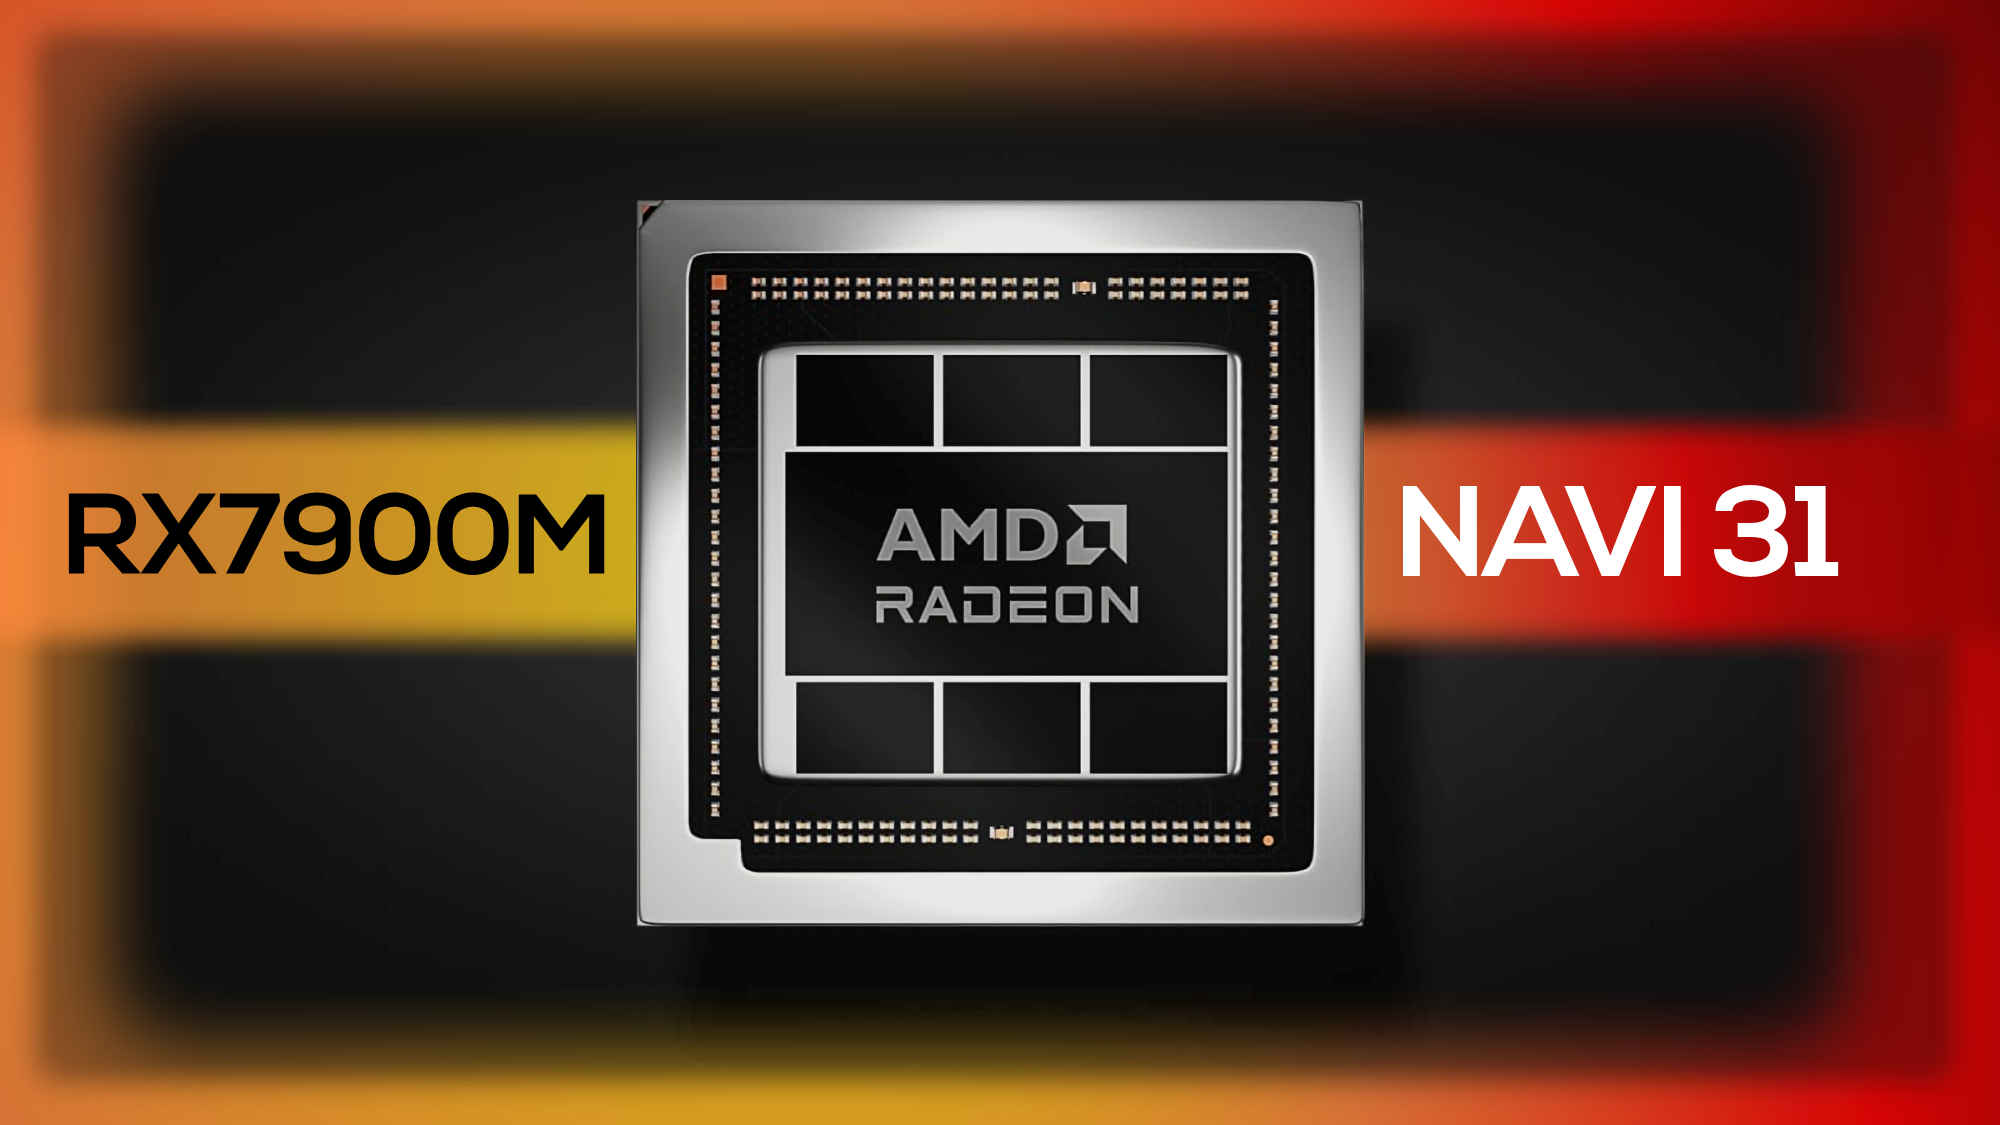 پردازنده گرافیکی موبایل AMD Radeon RX 7900M با 4608 هسته معرفی شد